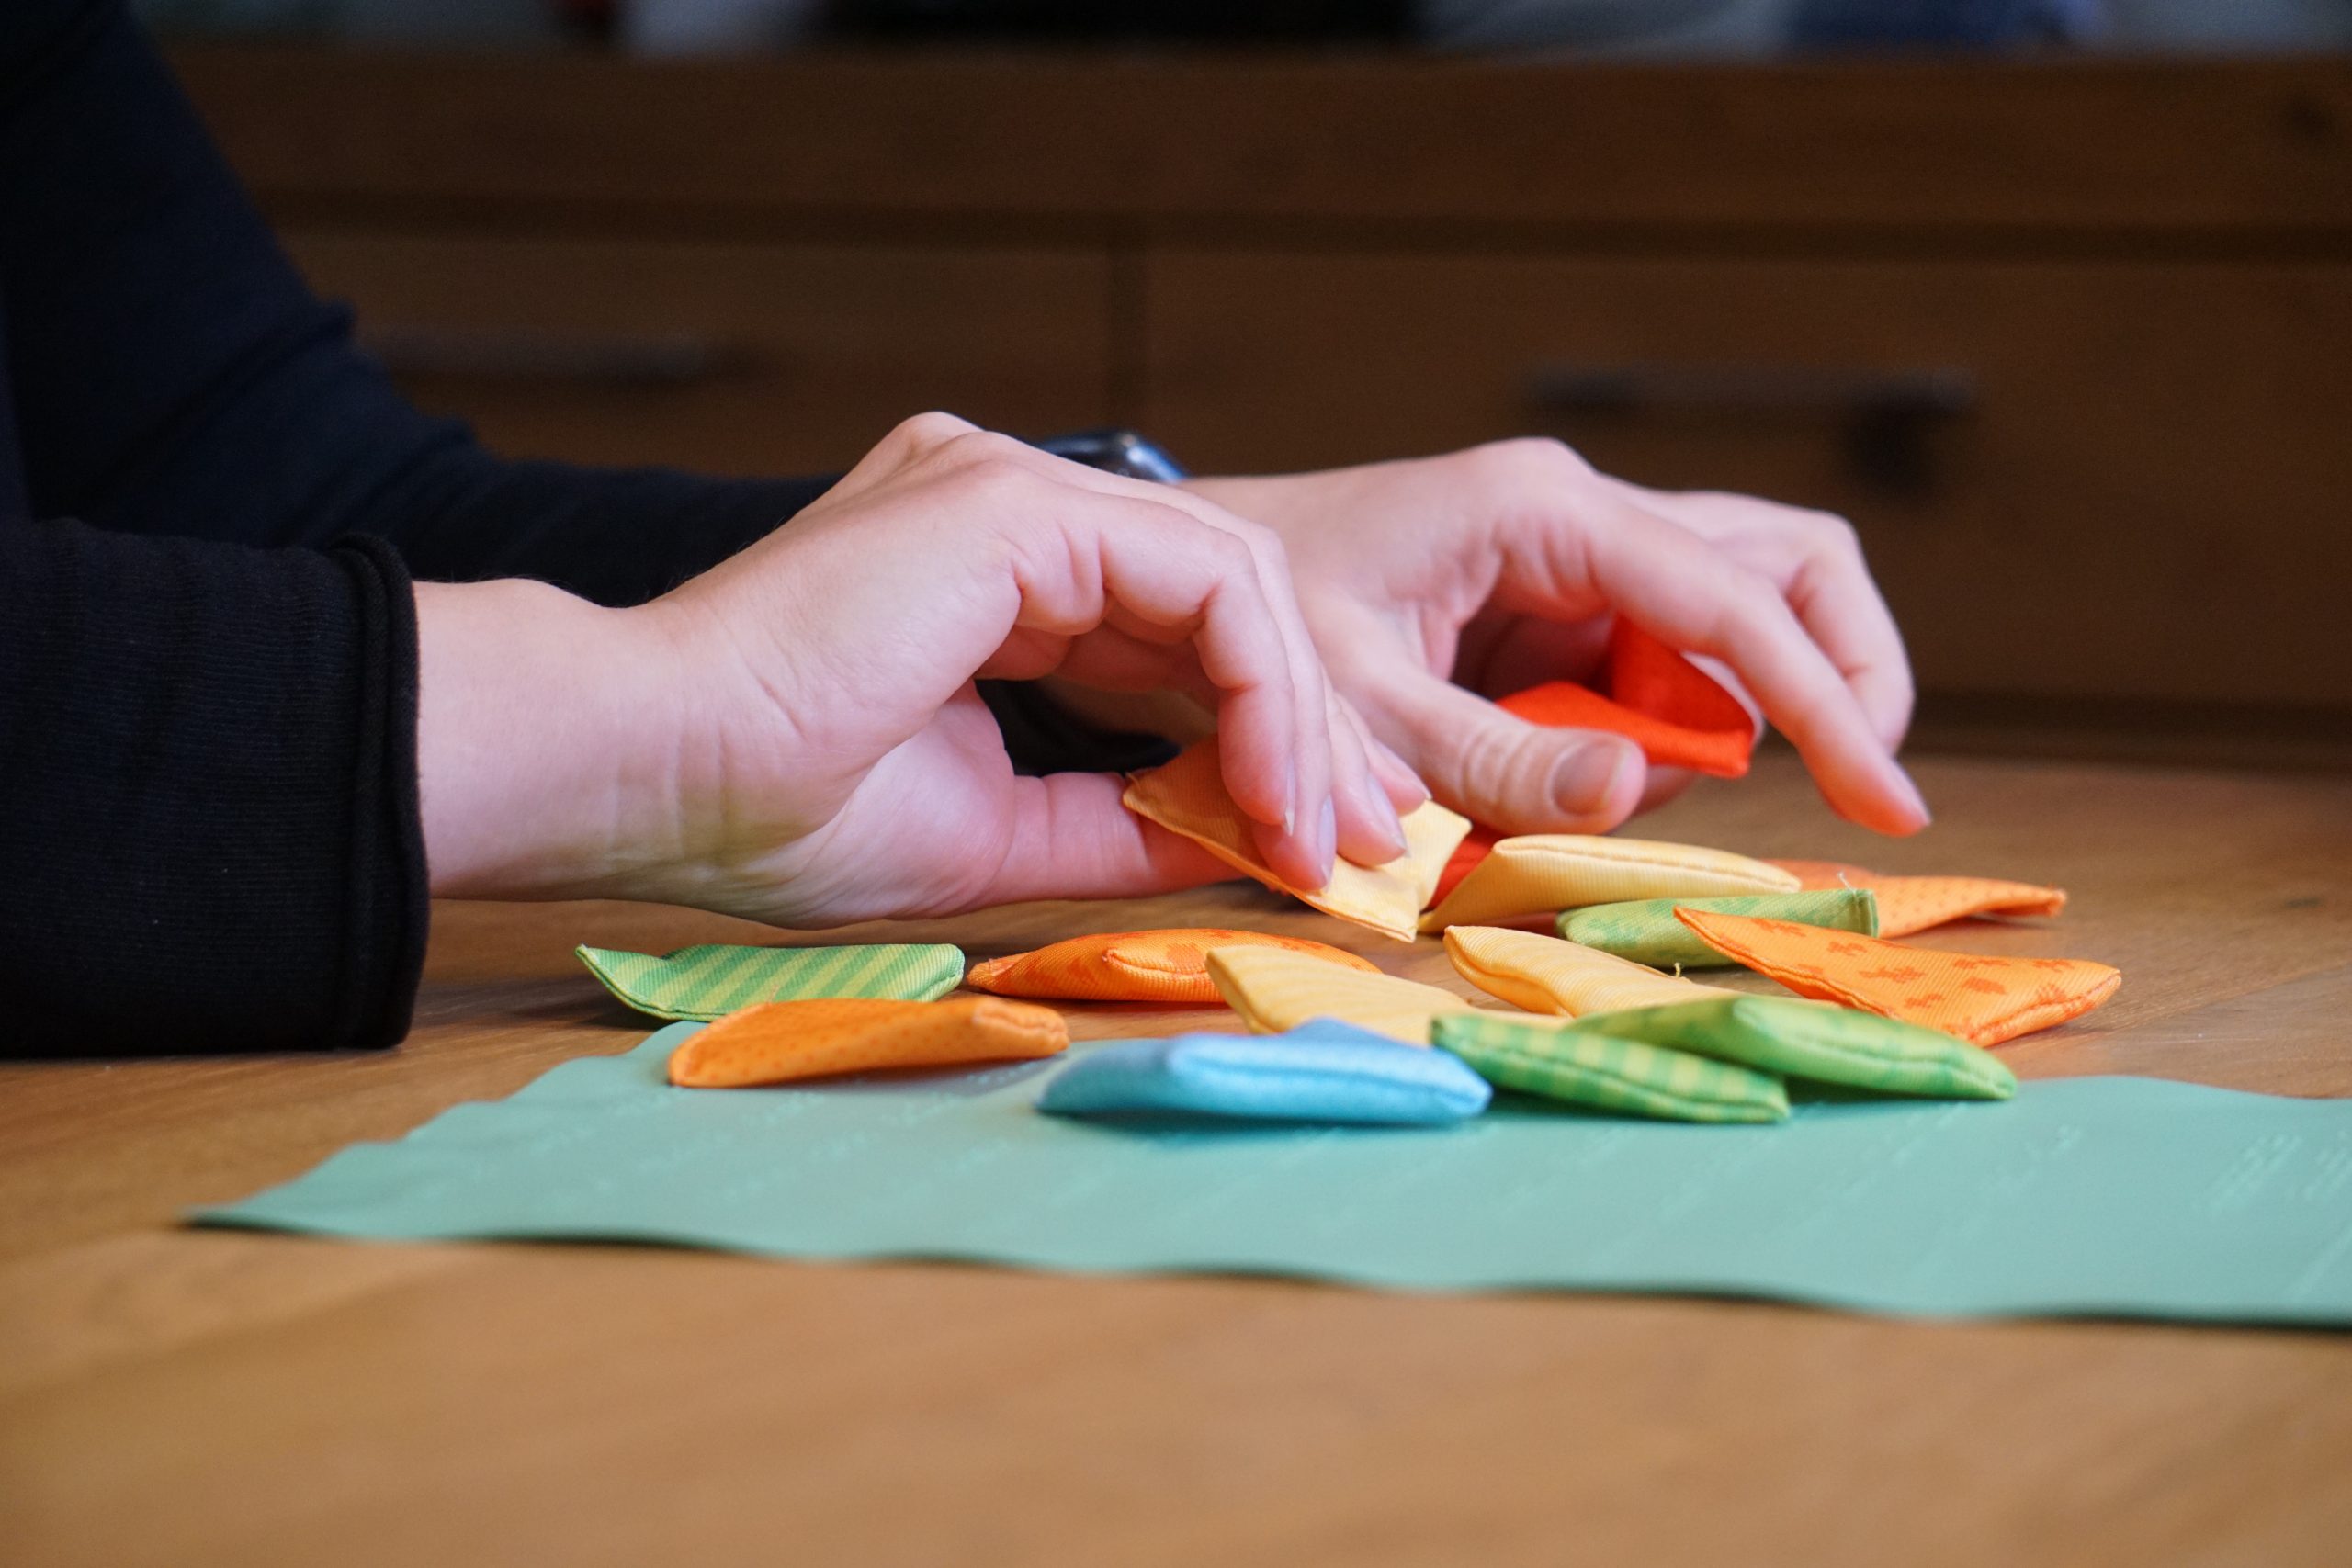 Zwei Hände erfühlen kleine unterschiedlich farbige und gemusterte Stoffkissen, die auf einem Tisch liegen.